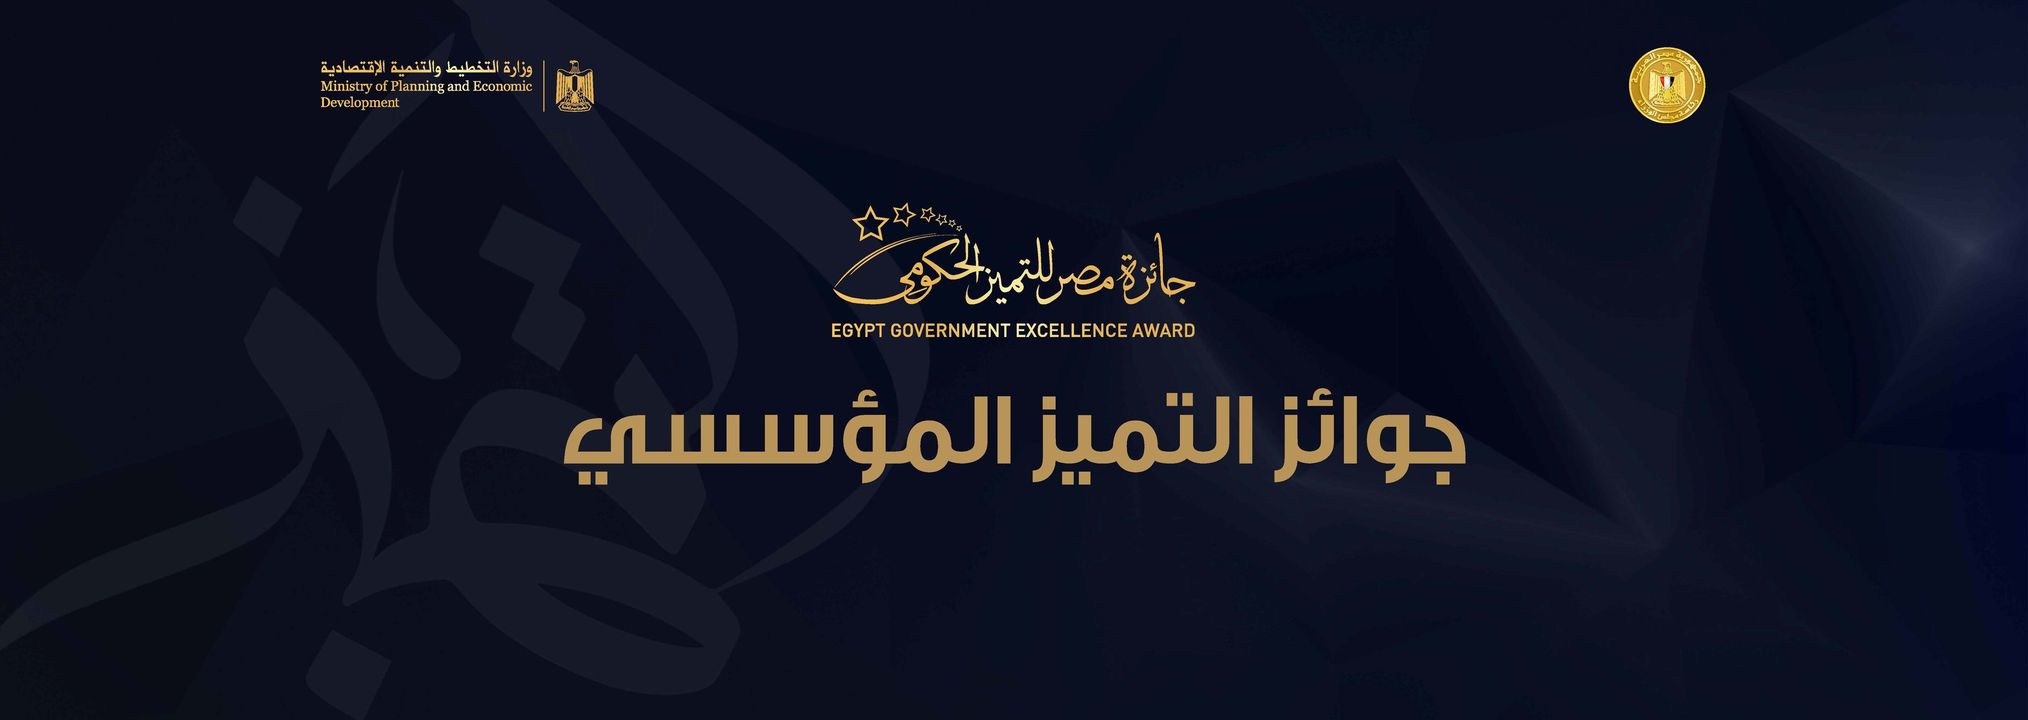 تعرف على الفائزين بجوائز مصر للتميز الحكومي في دورتها الثالثة بفئاتها العشرين المؤسسية والفردية ألف مبروك 53361